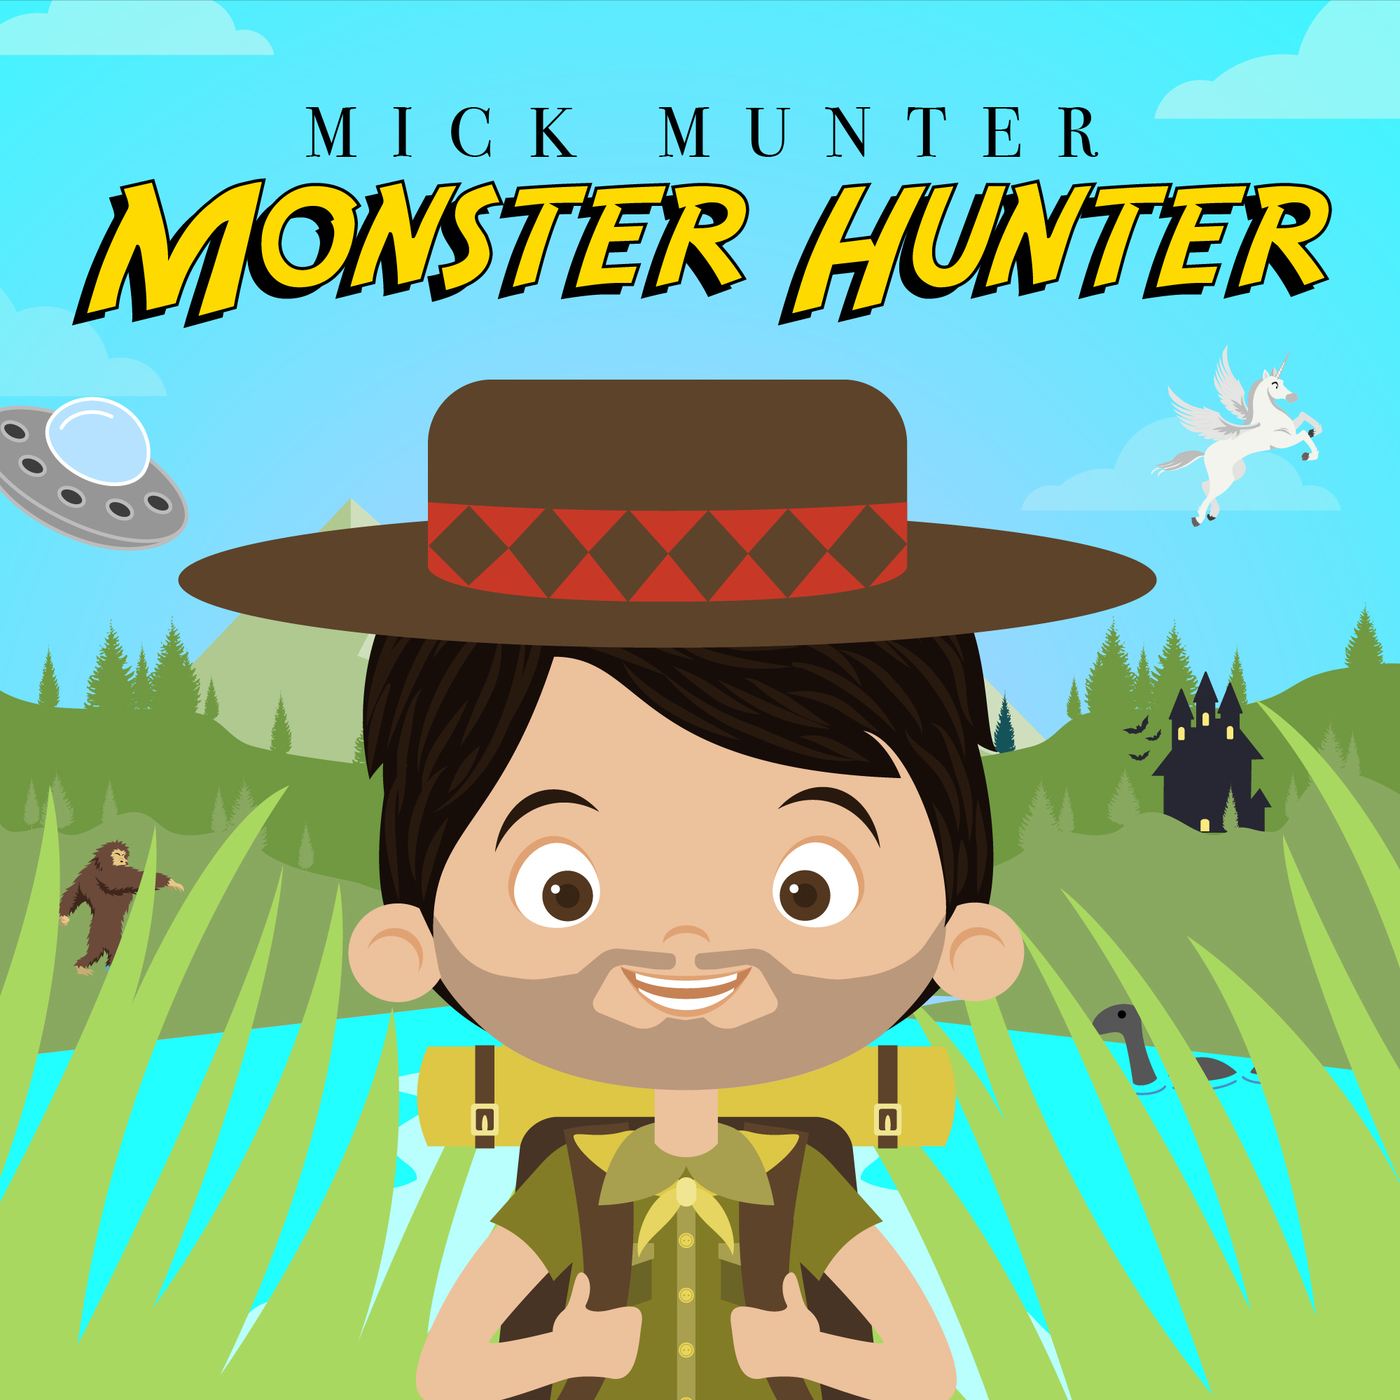 Mick Munter Monster Hunter